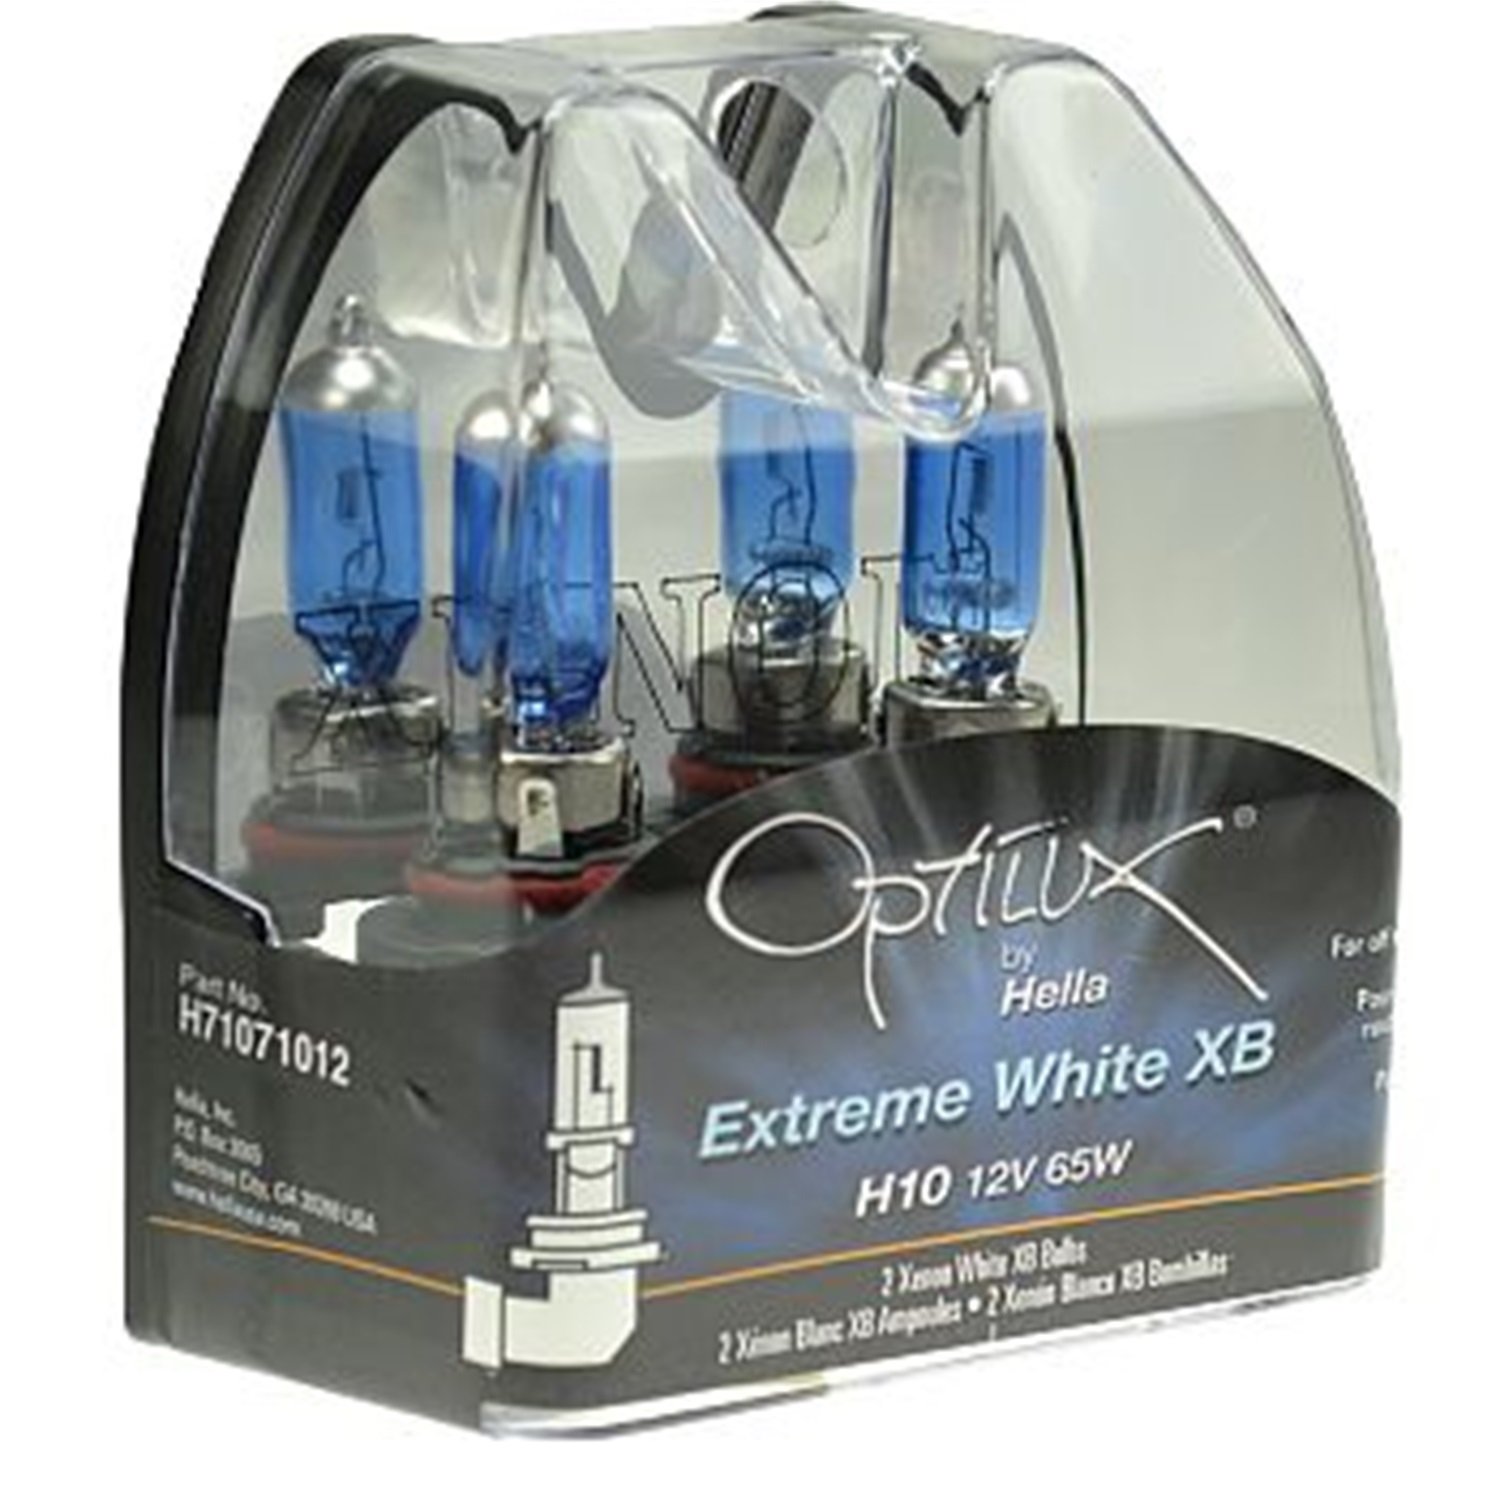 Optilux Extreme White XB Bulbs Bulb Type: H9